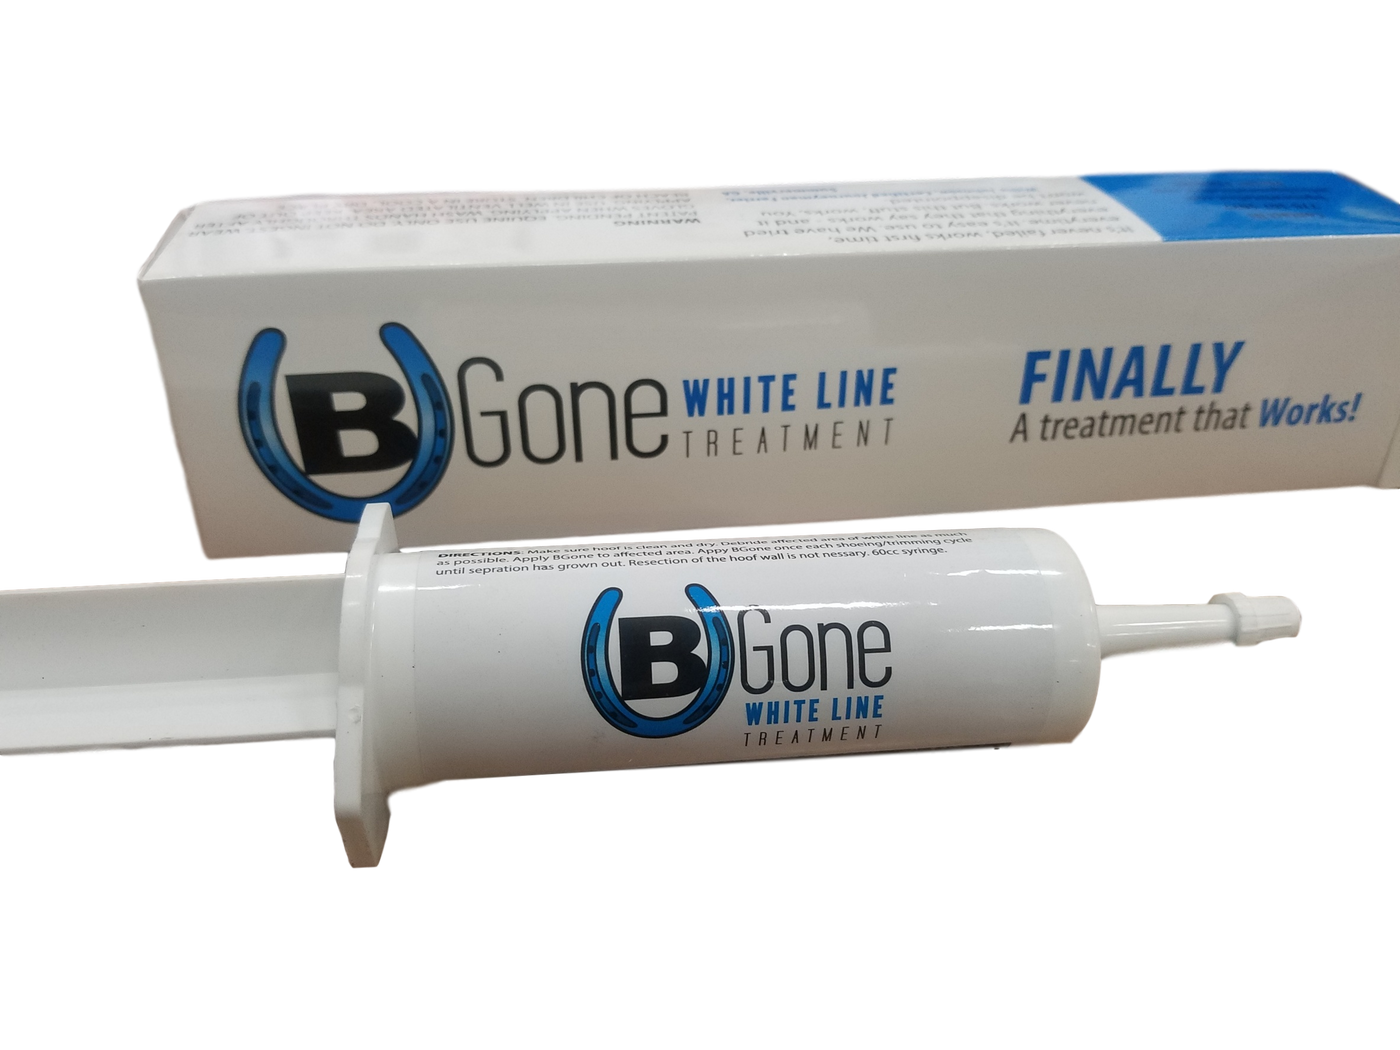 BGone White Line Treatment